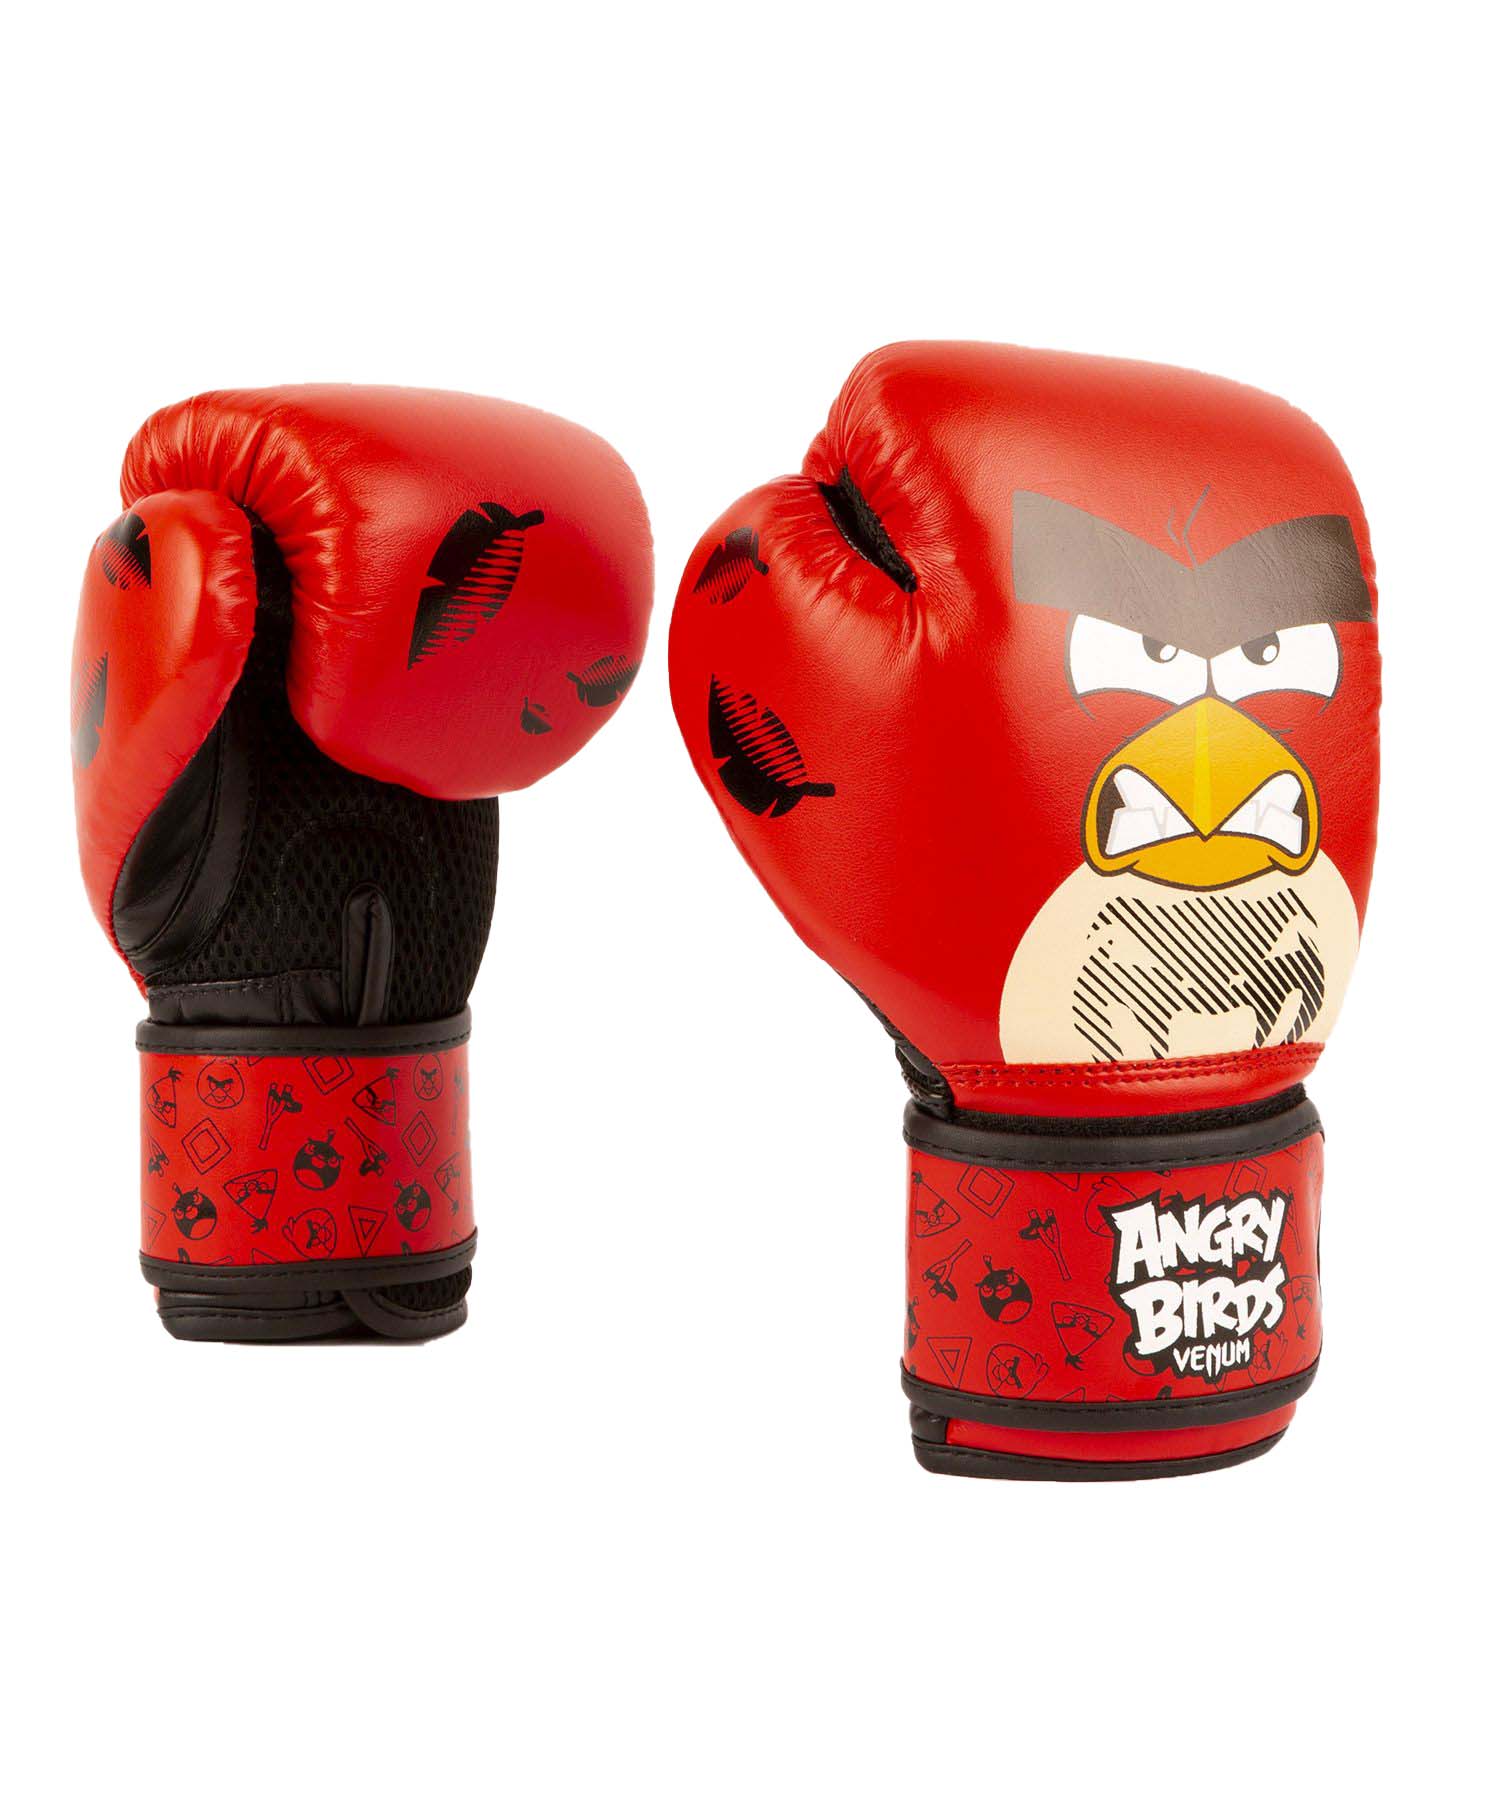 Dětské boxerské rukavice Angry Birds VENUM červené vel. 6 oz